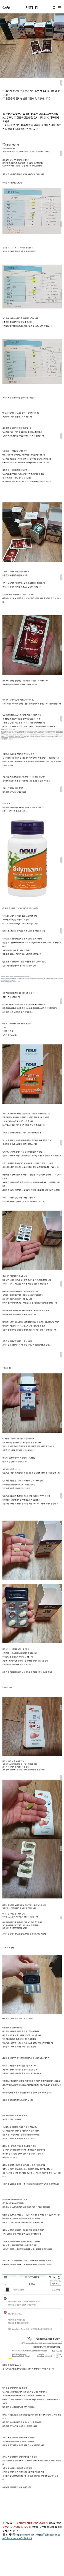 [펌] 지금까지 먹어본 밀크씨슬(간영양제) 종류별 후기